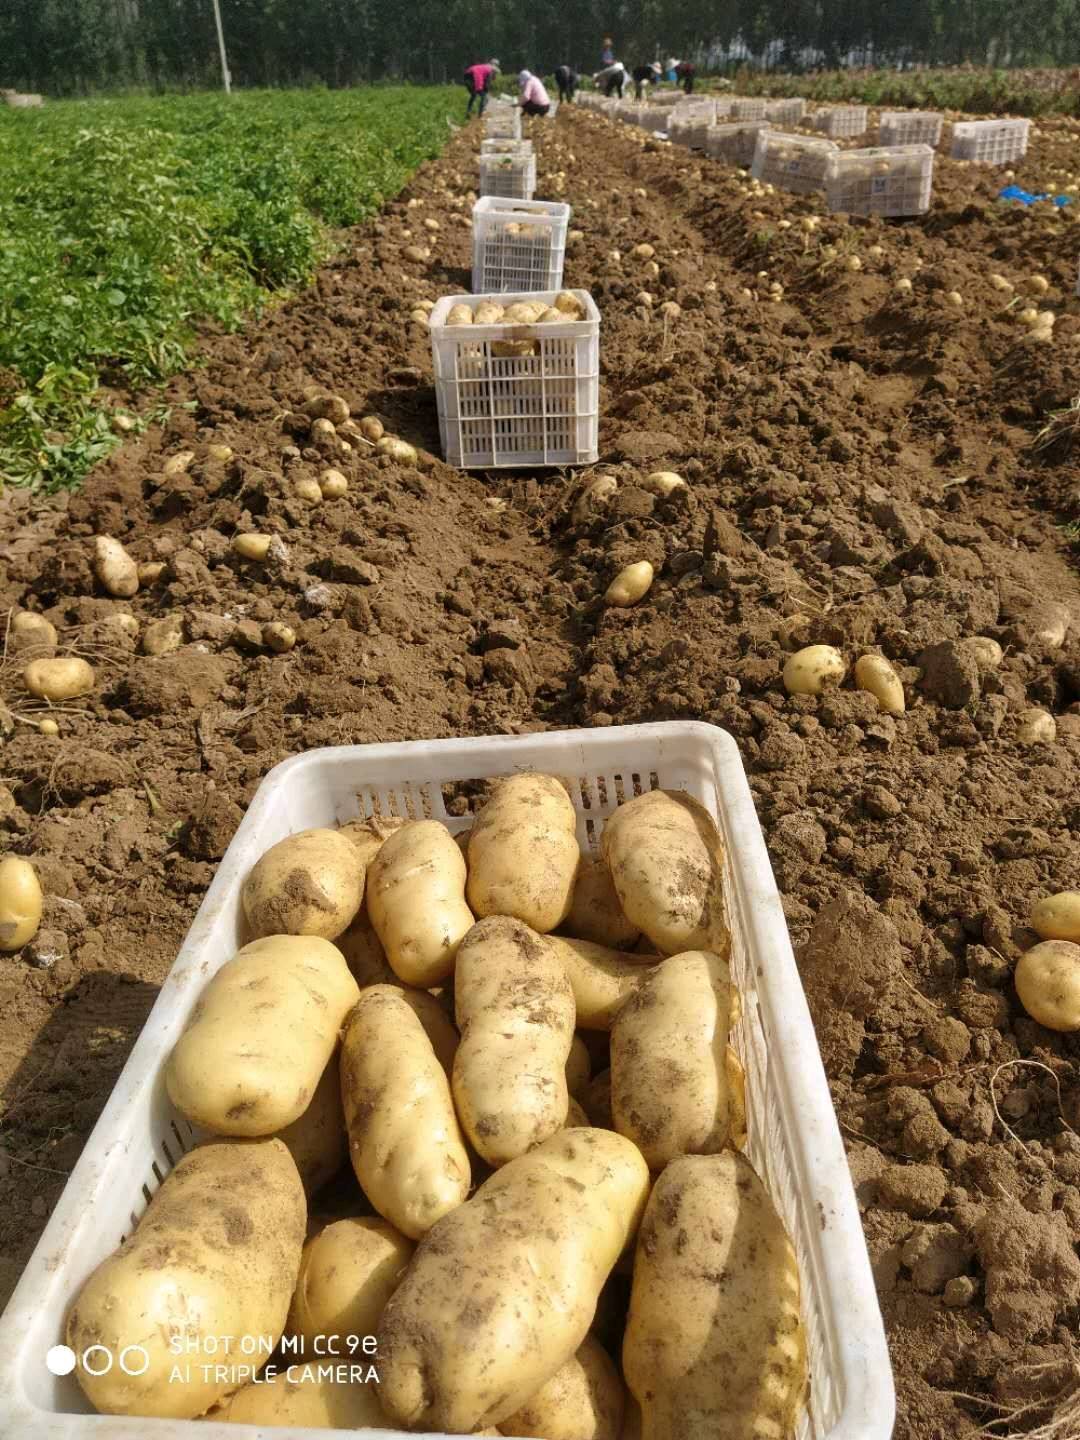 荷兰十五土豆大量上市13176349733微信同号